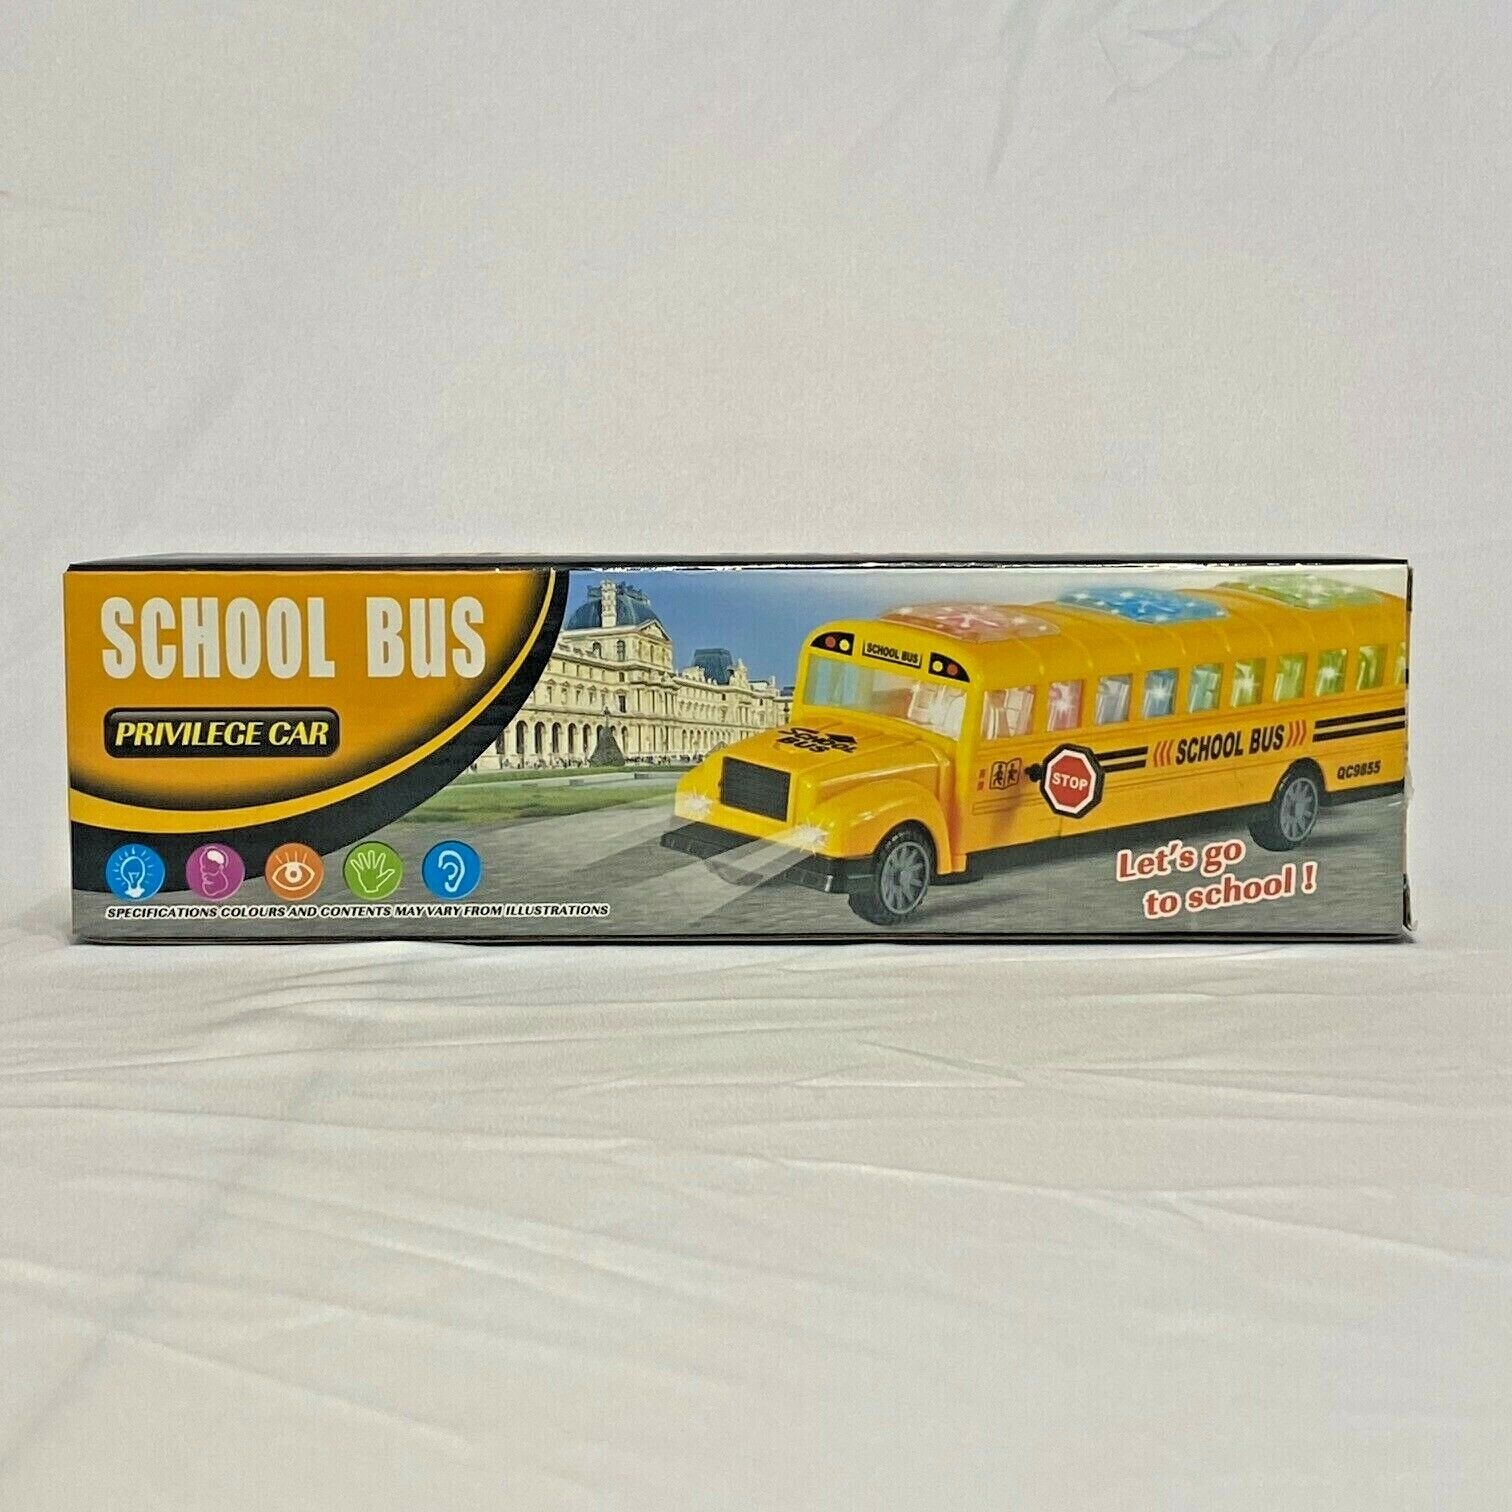 Yellow School Bus, Privilege car, Let's go to School